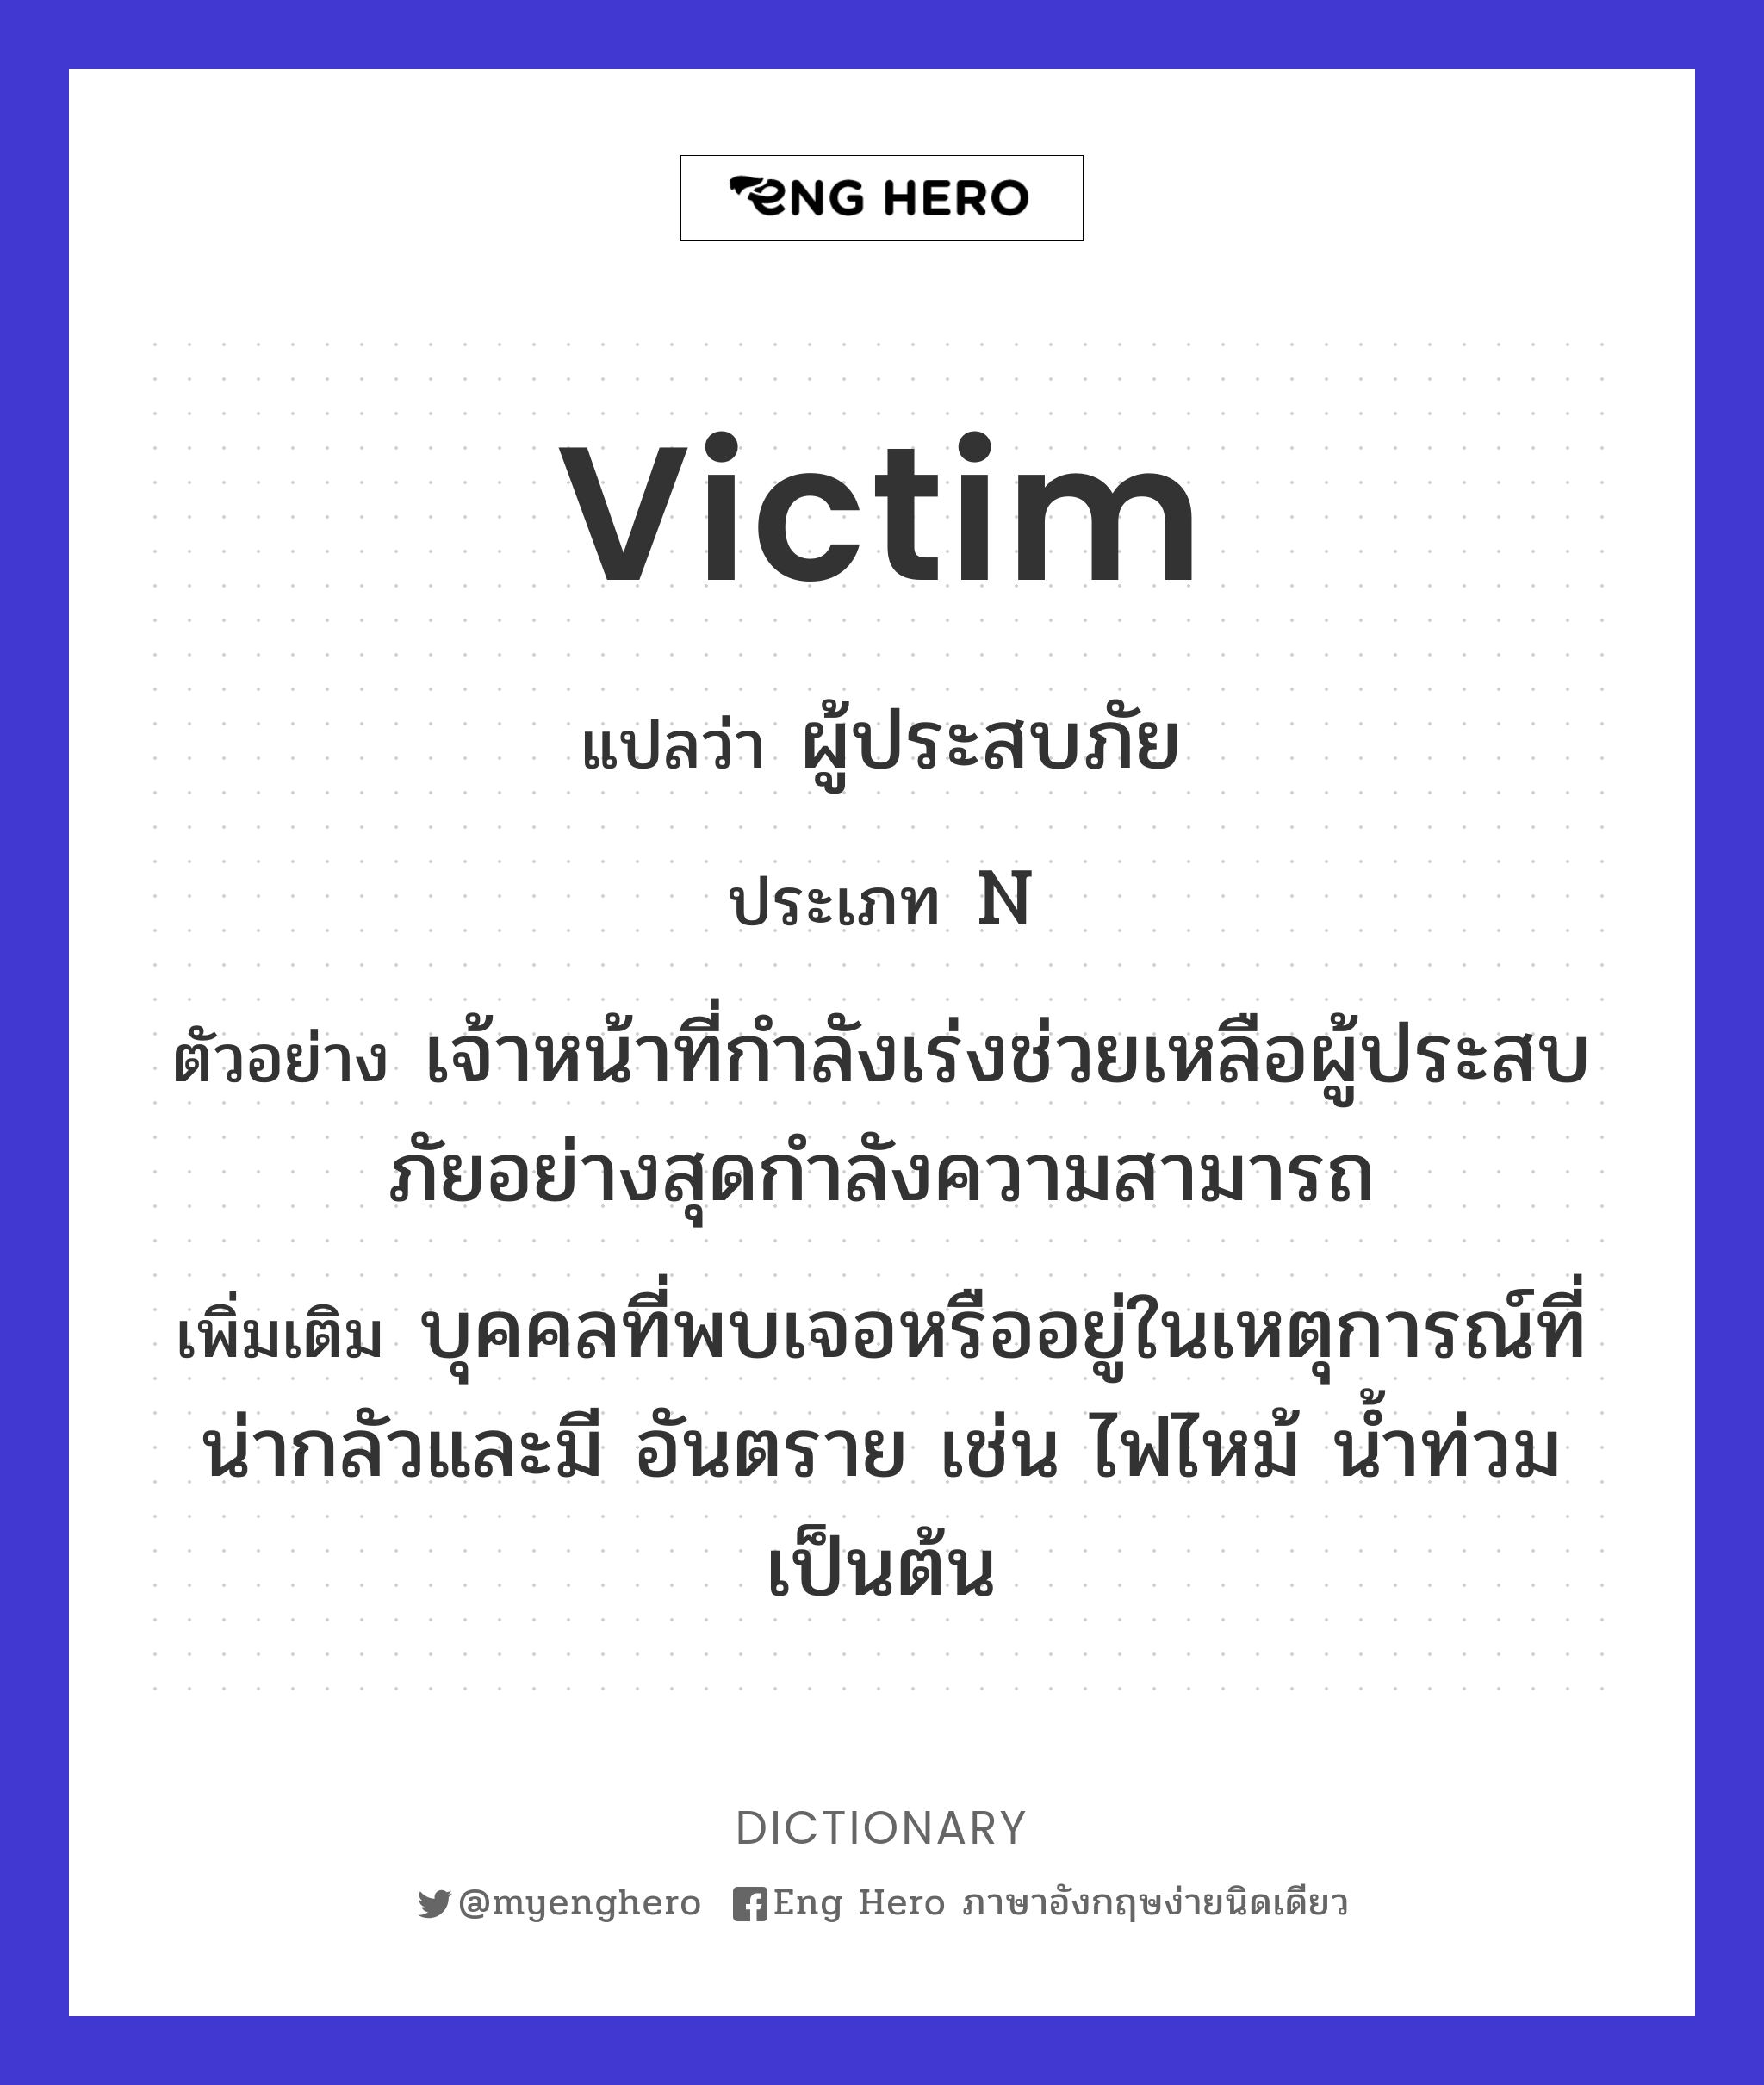 victim